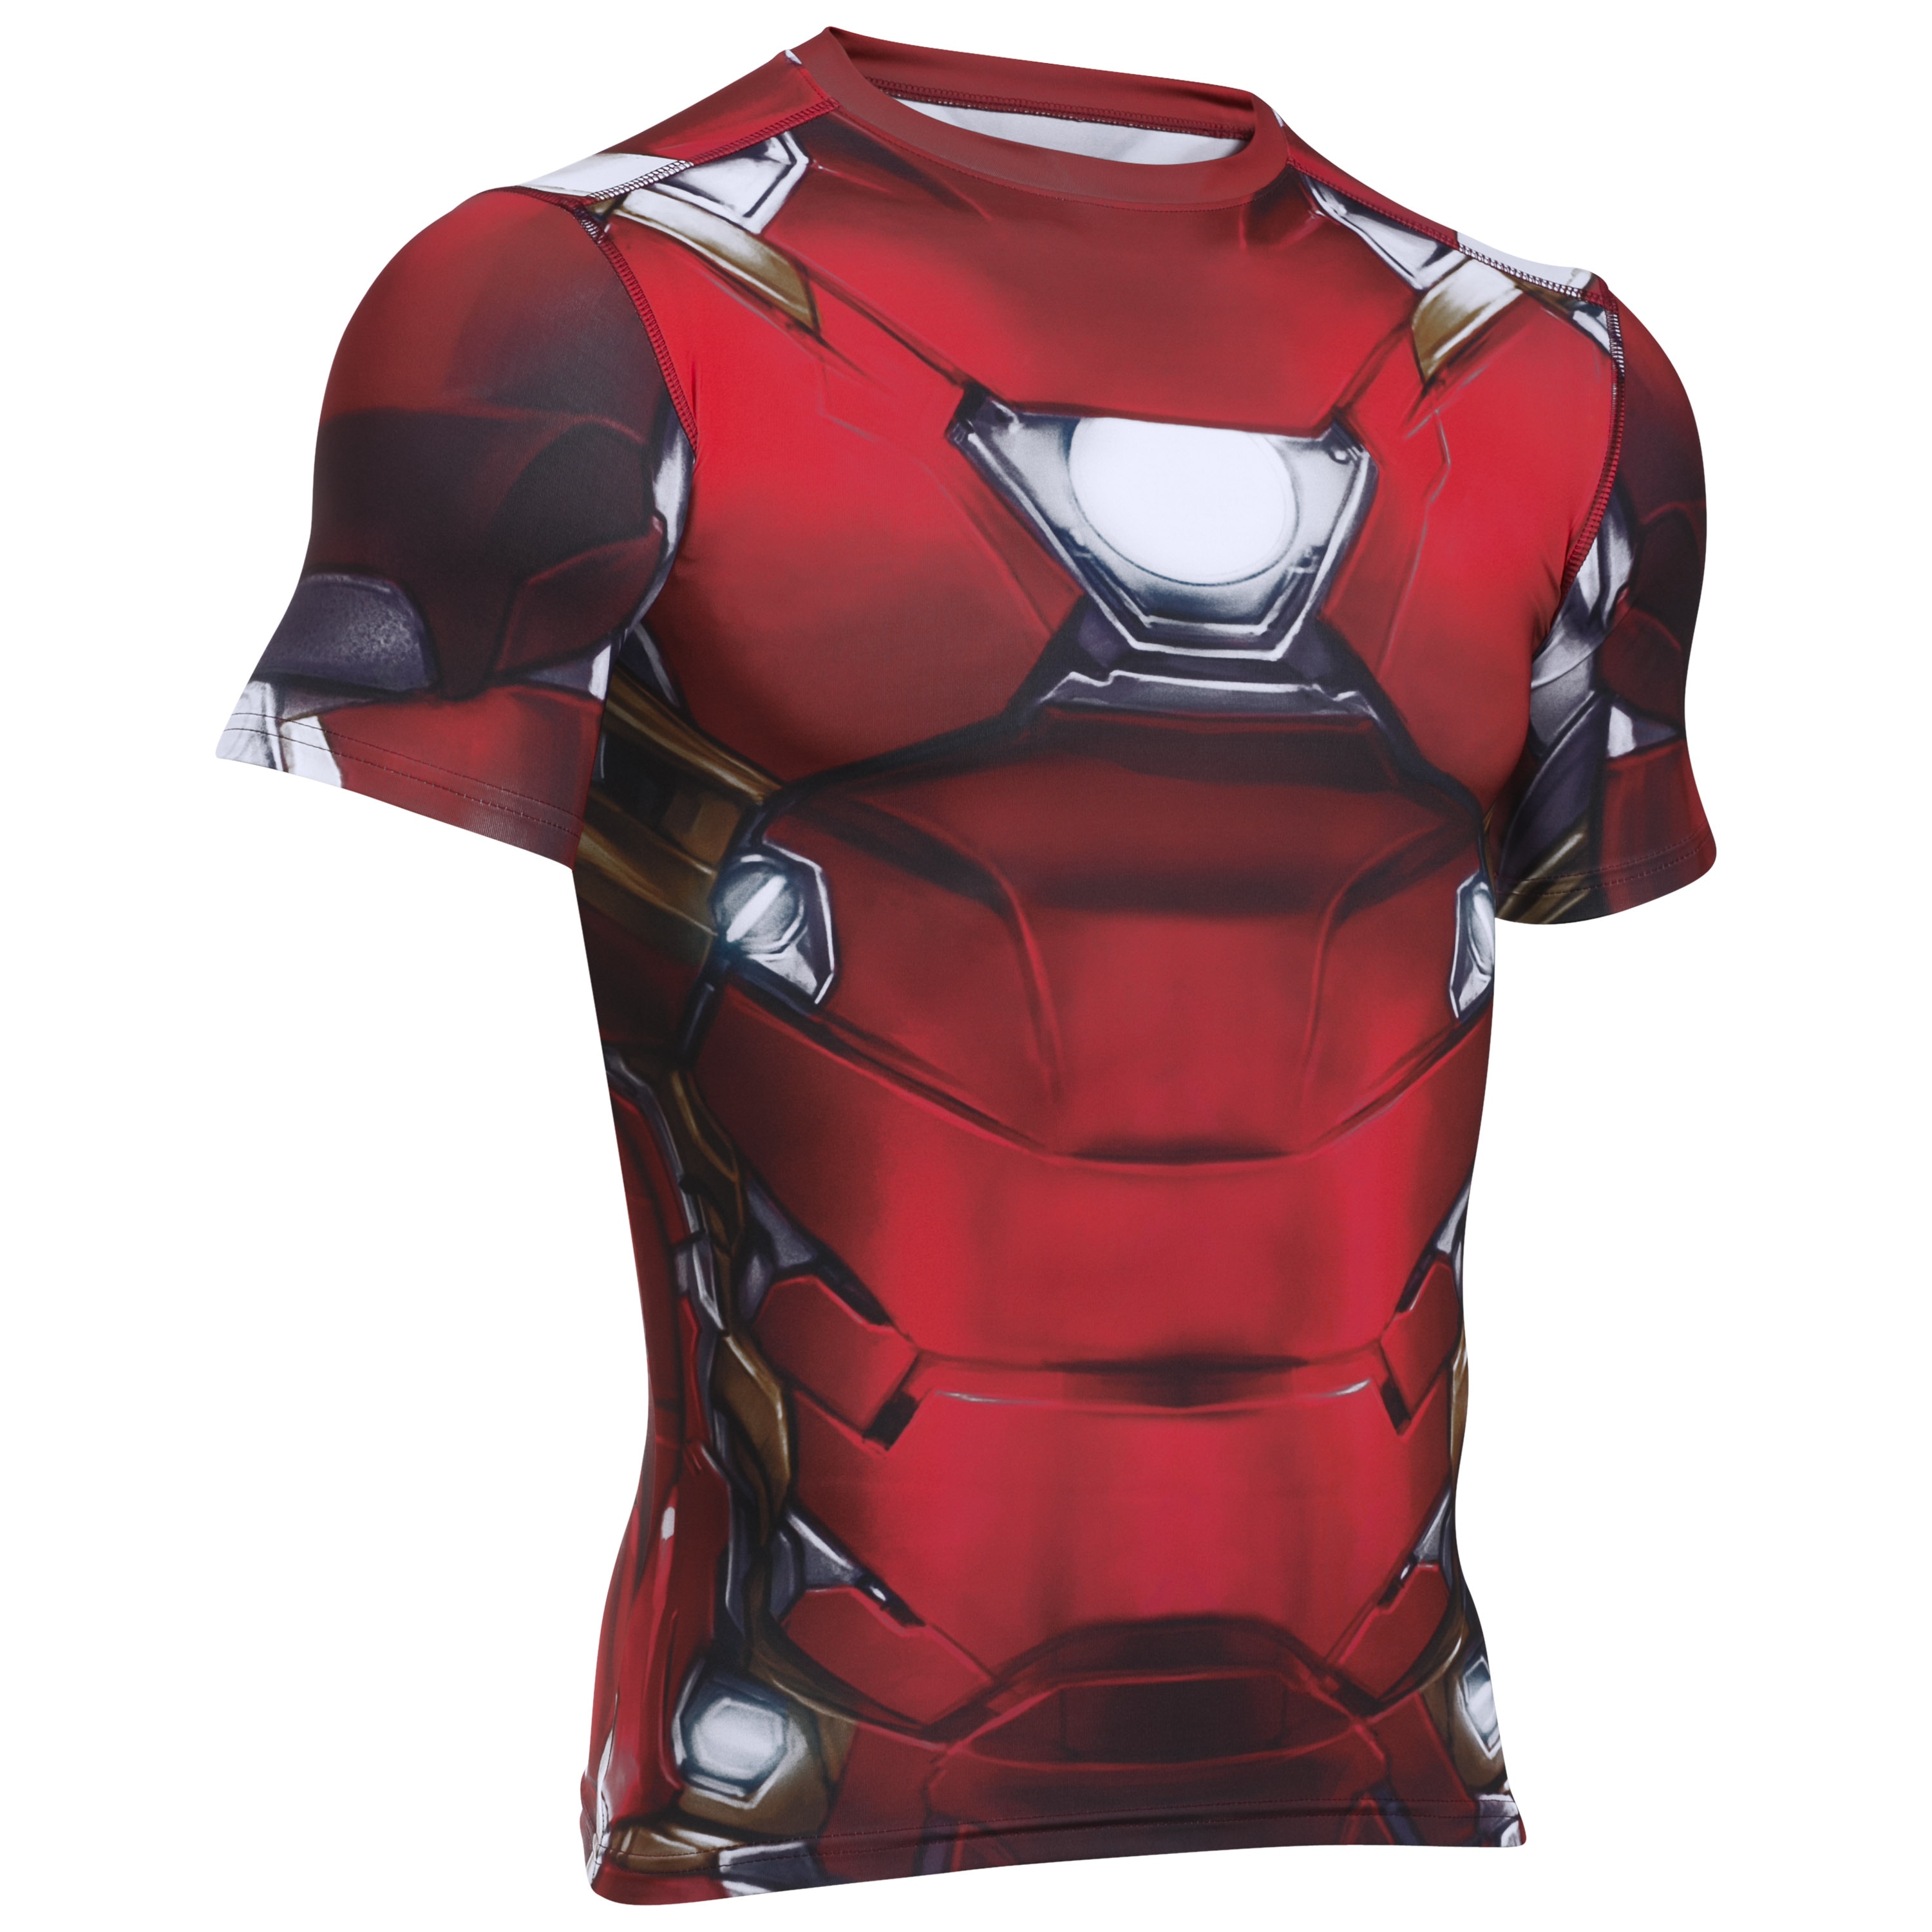 Armour Iron Man Suit